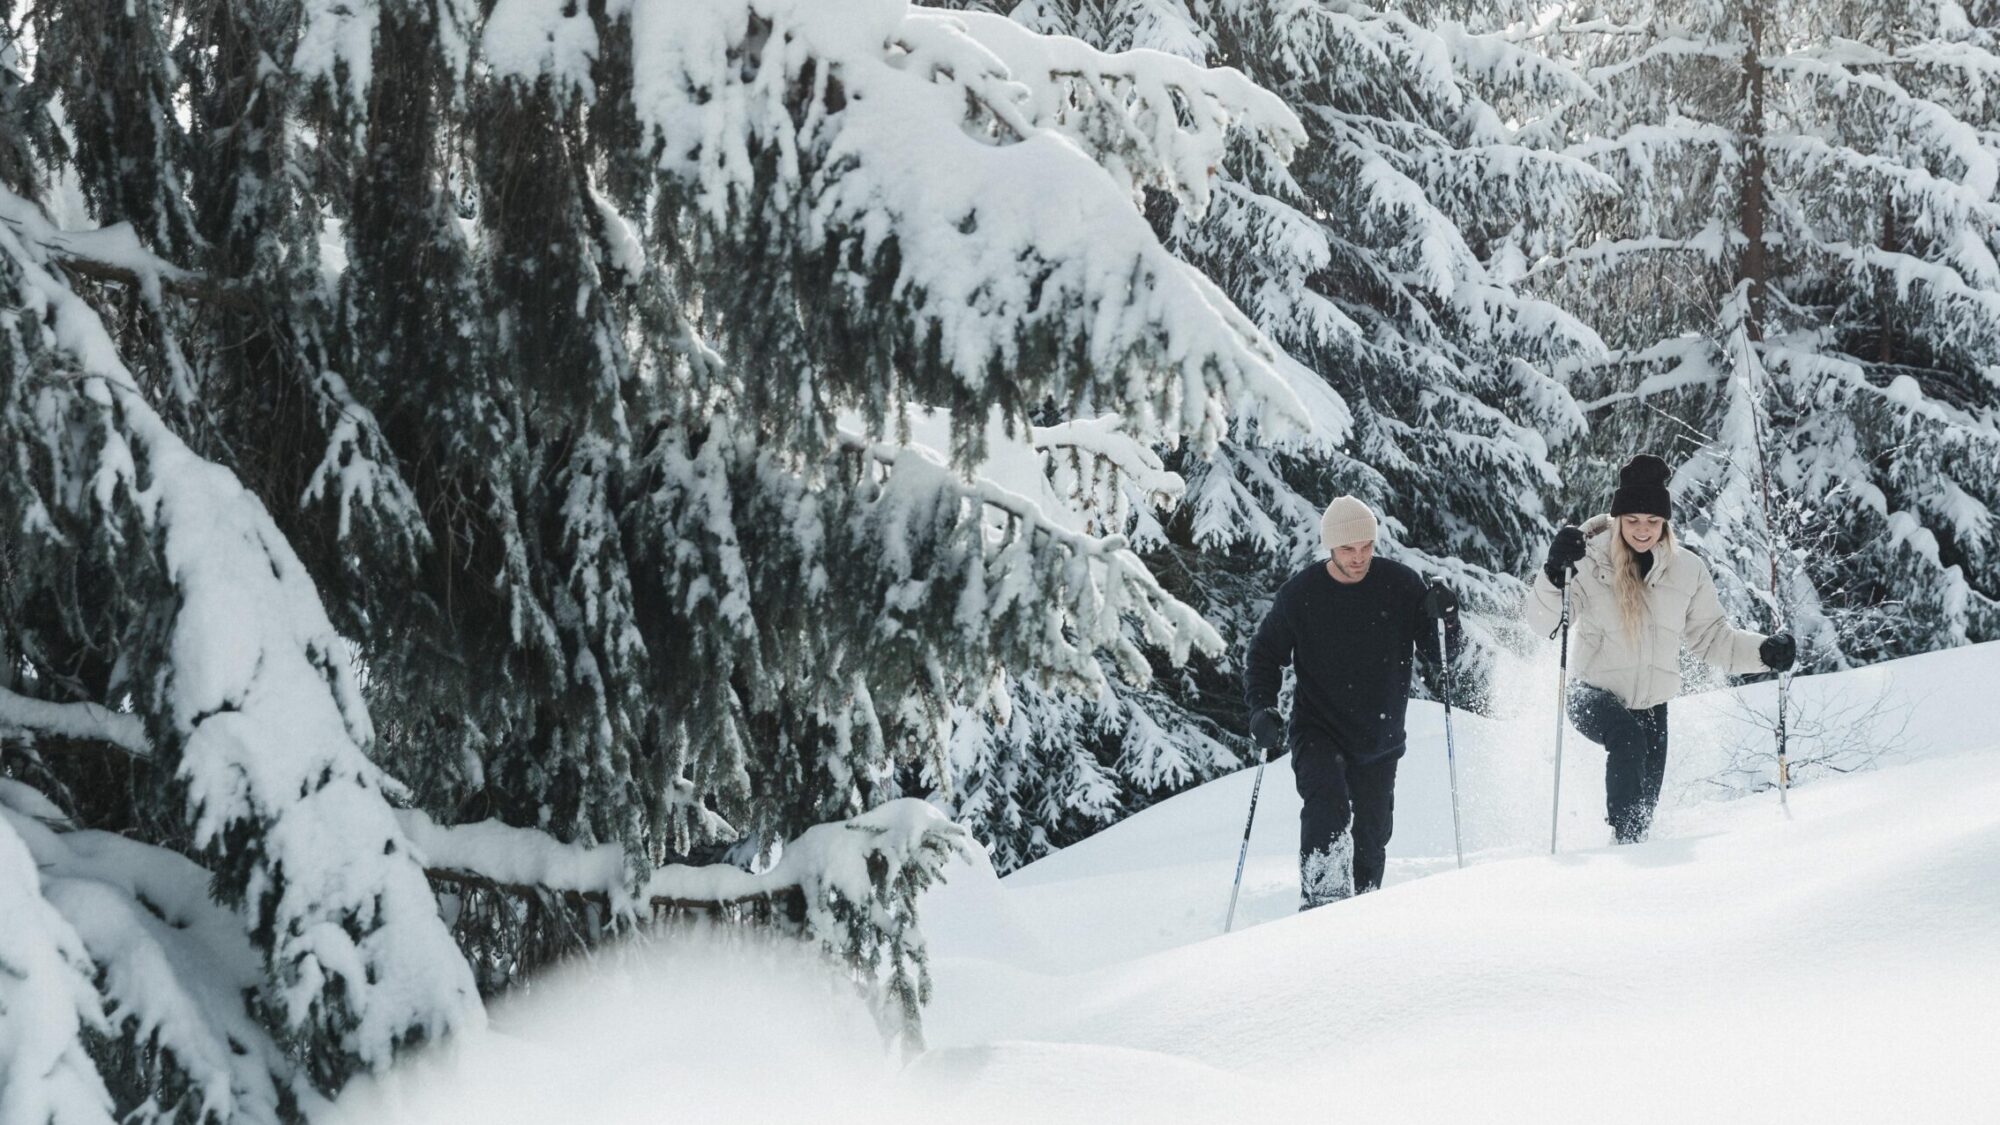 Das Dorf Schönleitn weiß um die Schönheit des Kärntner Winters Bescheid und bietet daher geführte Schneeschuhtouren an.